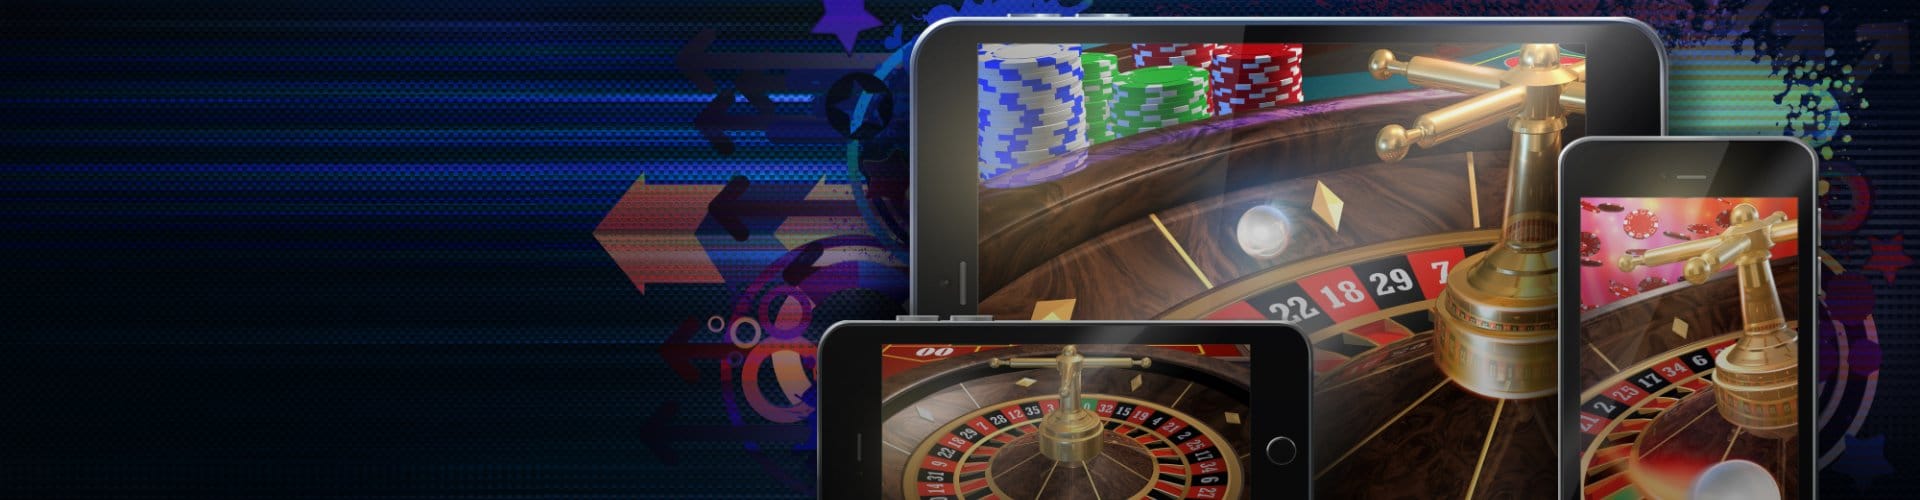 Full Review Of Lucky Luke Online Casino/Slots